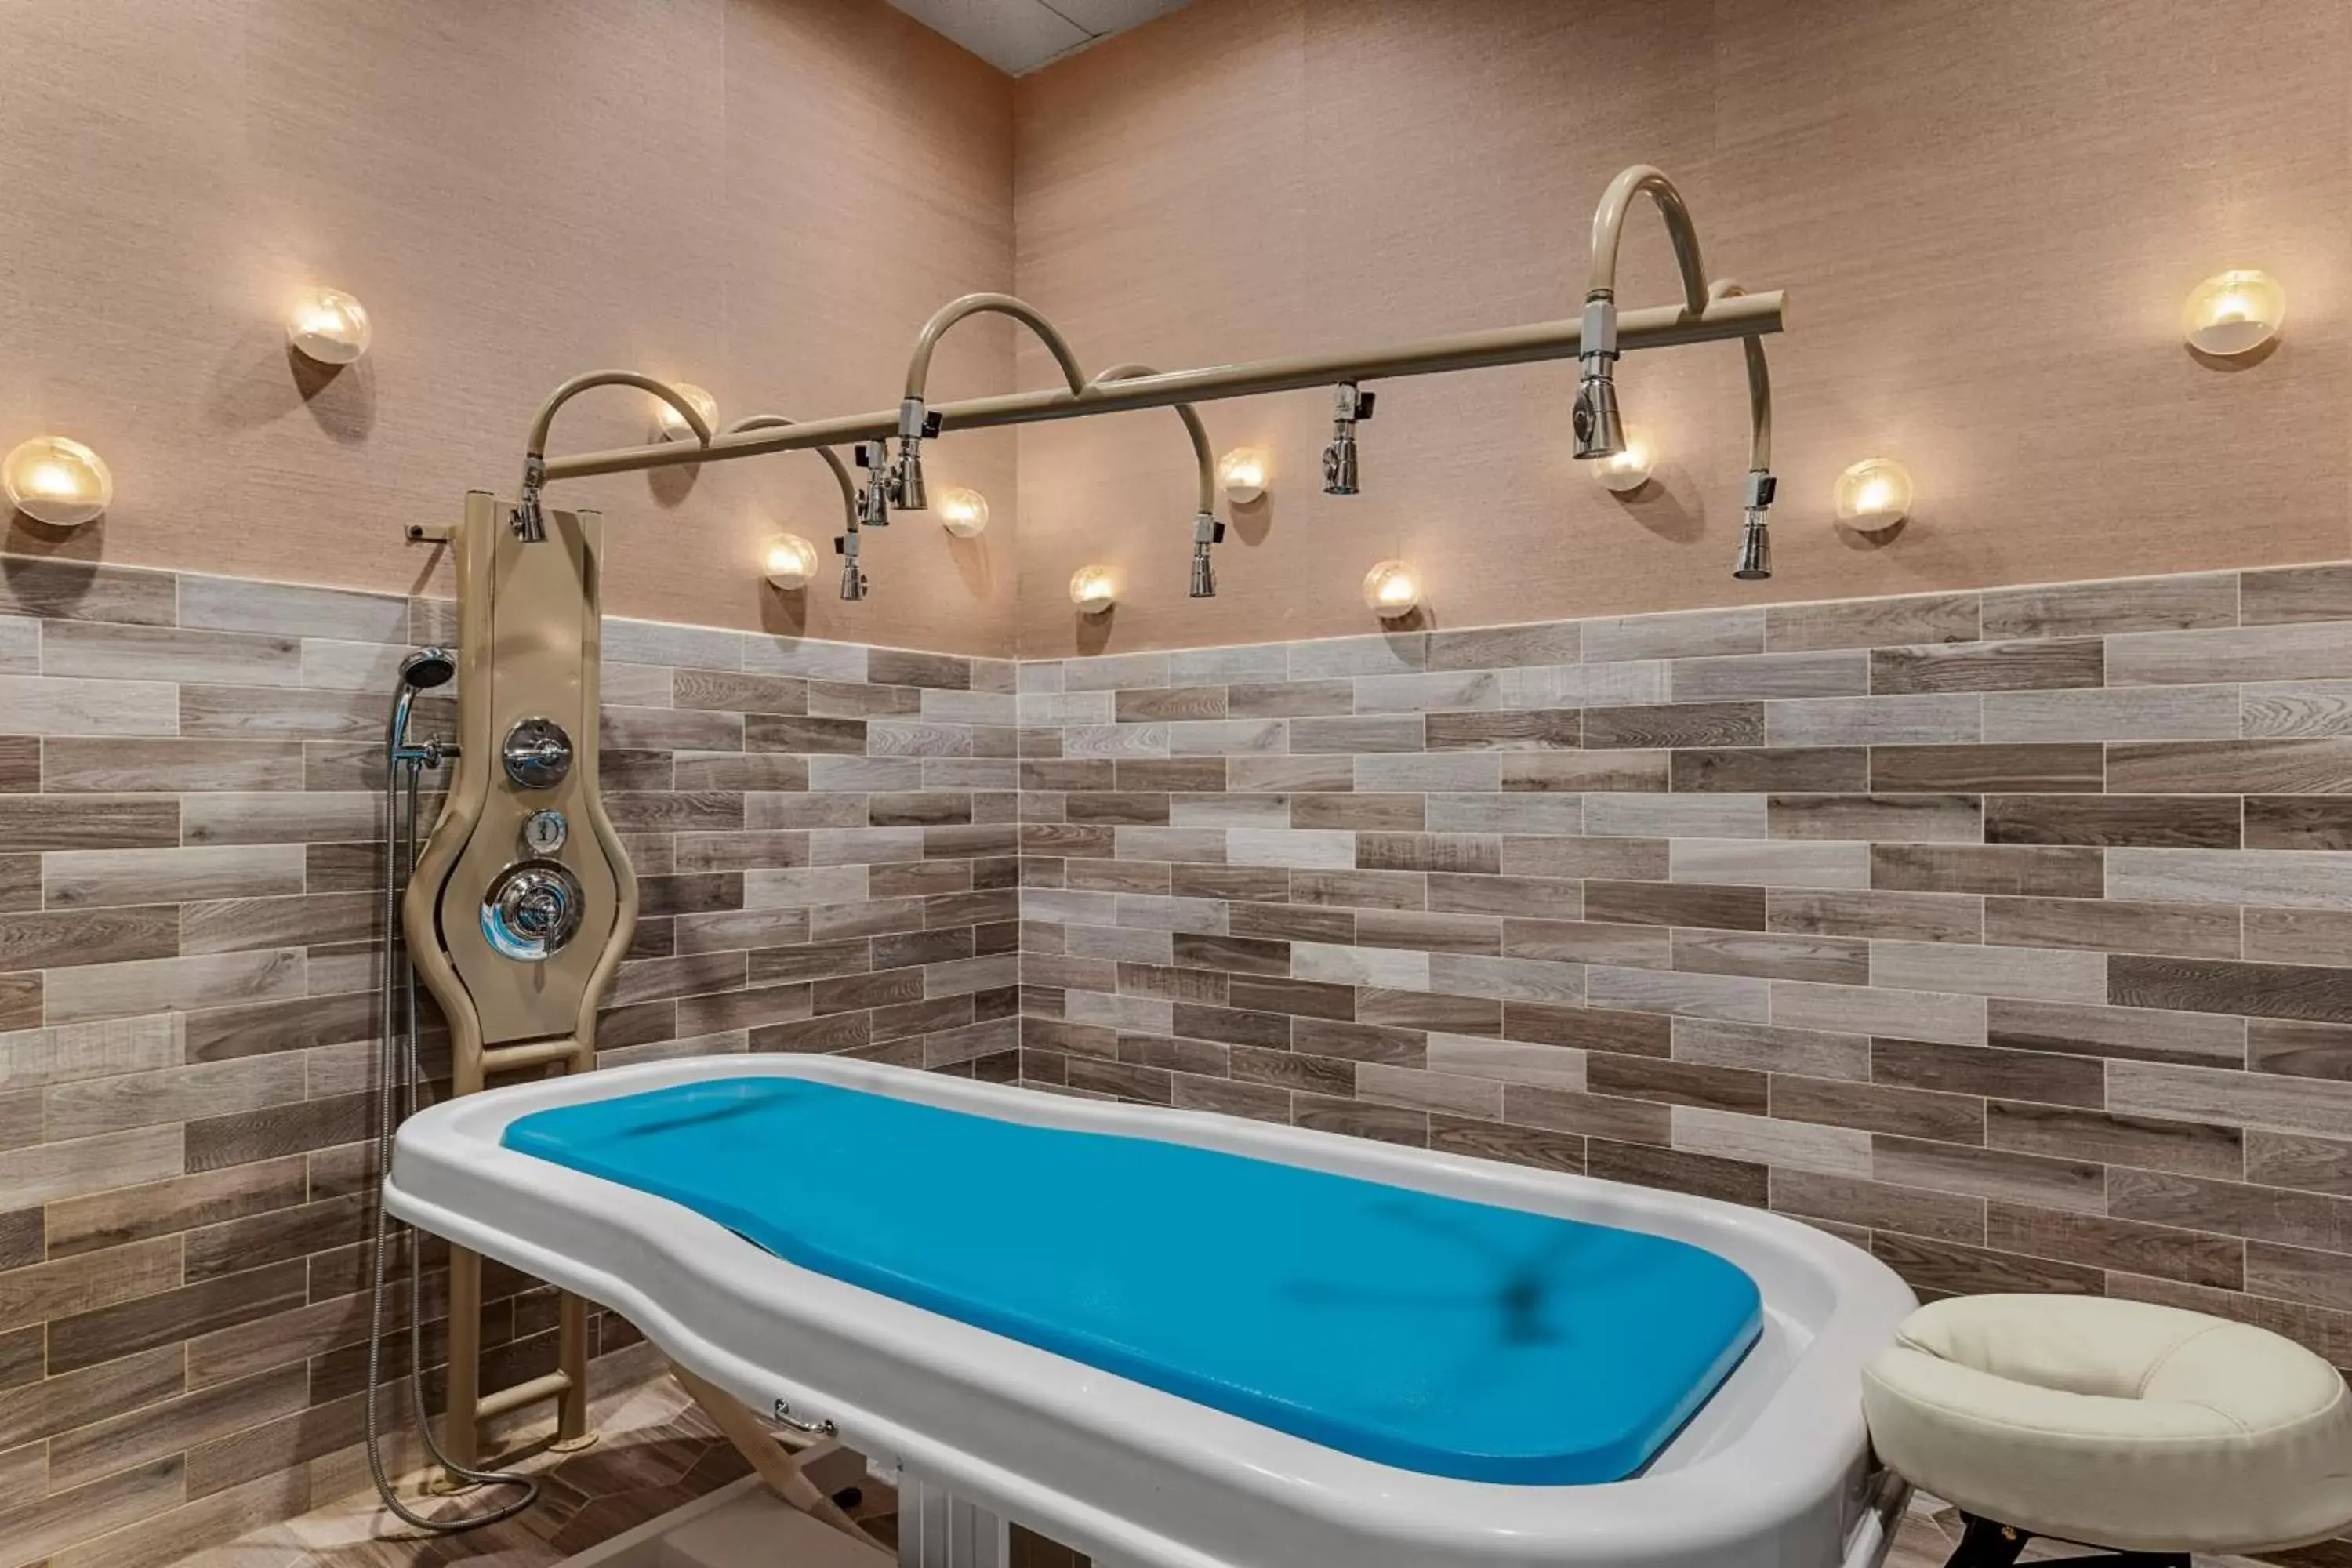 Spa and wellness centre/facilities, Bathroom in Marriott's Barony Beach Club